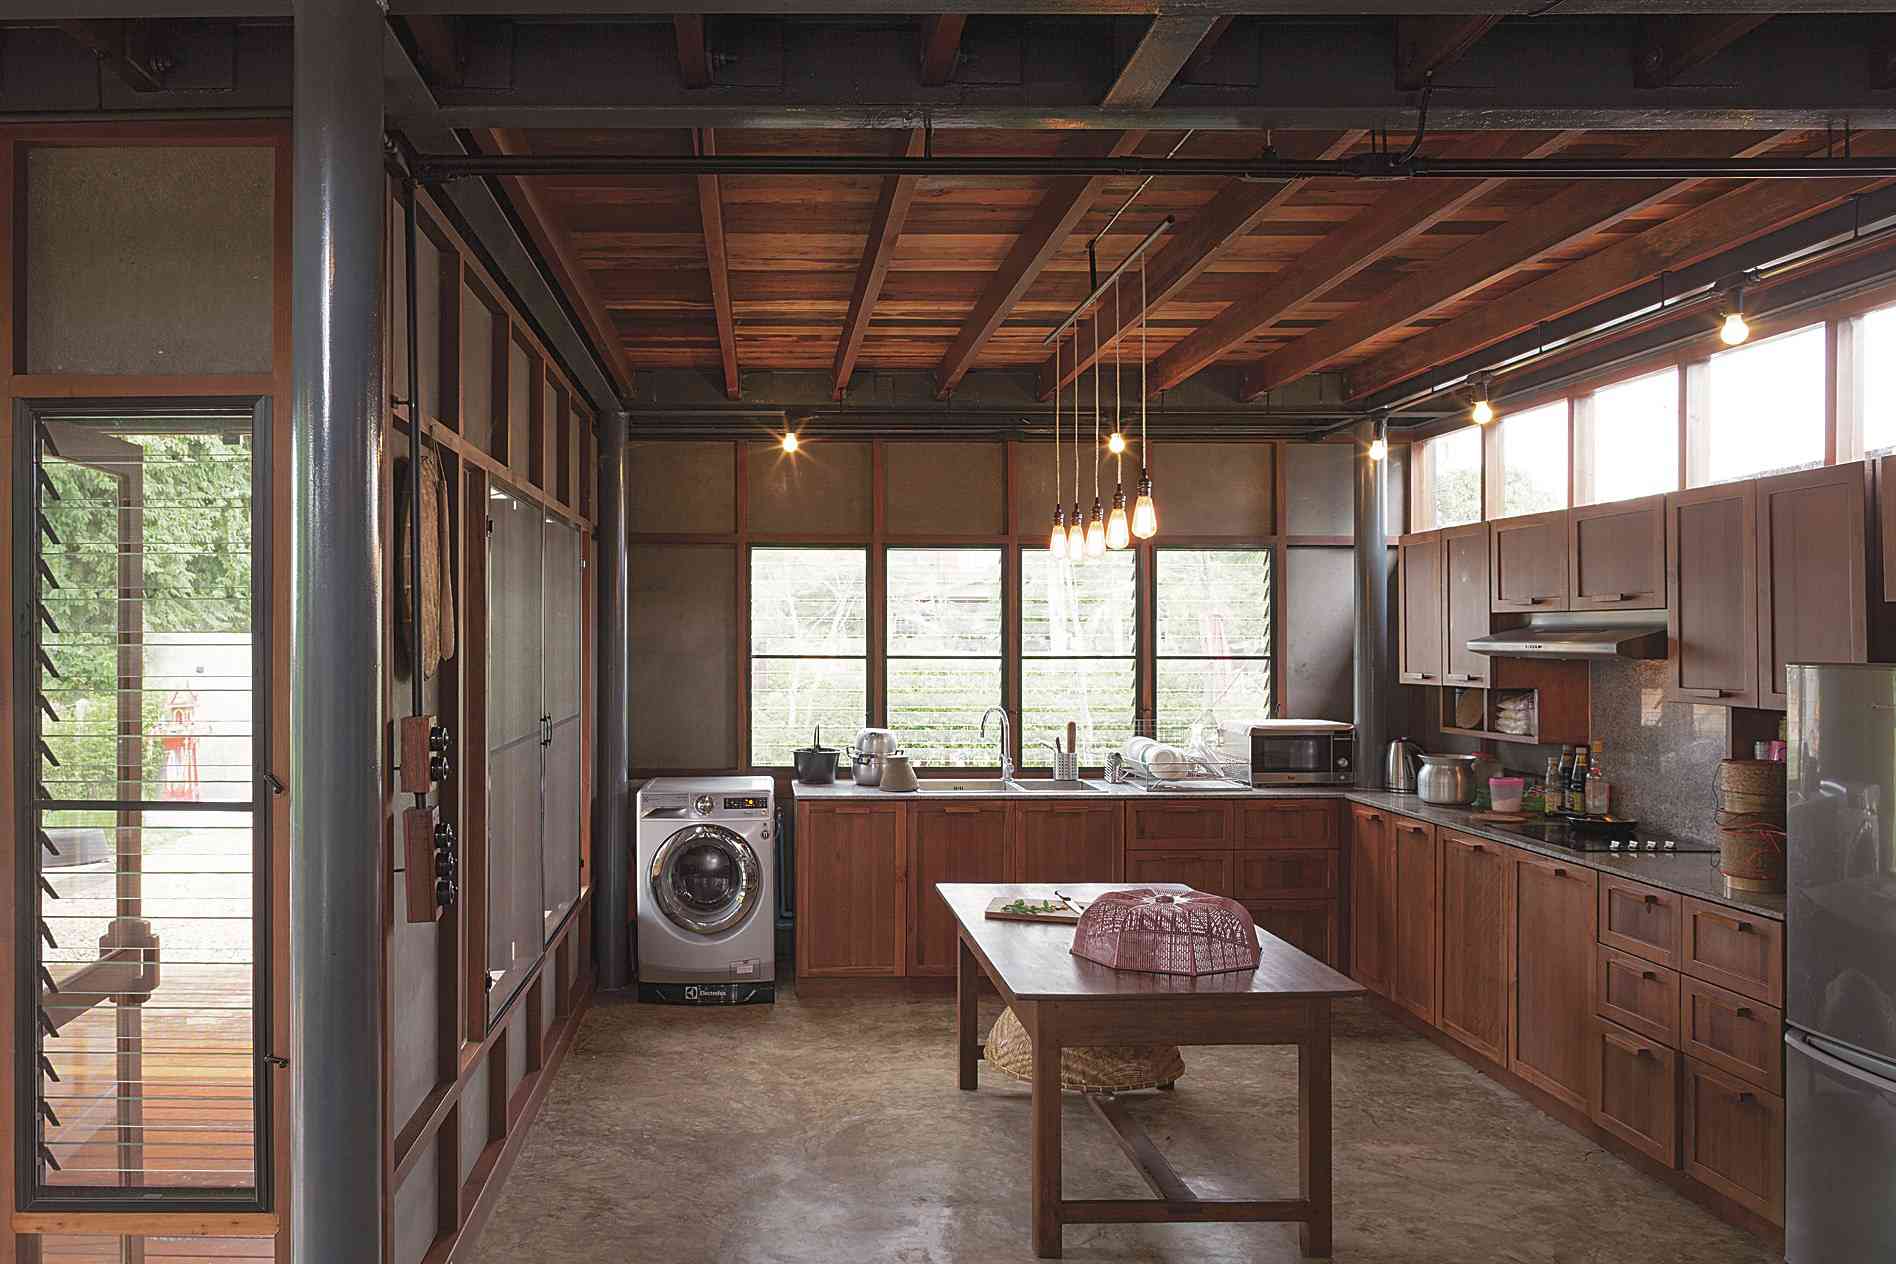 แบบห้องครัวสไตล์ไทย แบบห้องครัวไม้ แบบห้องครัวรูปตัวแอล